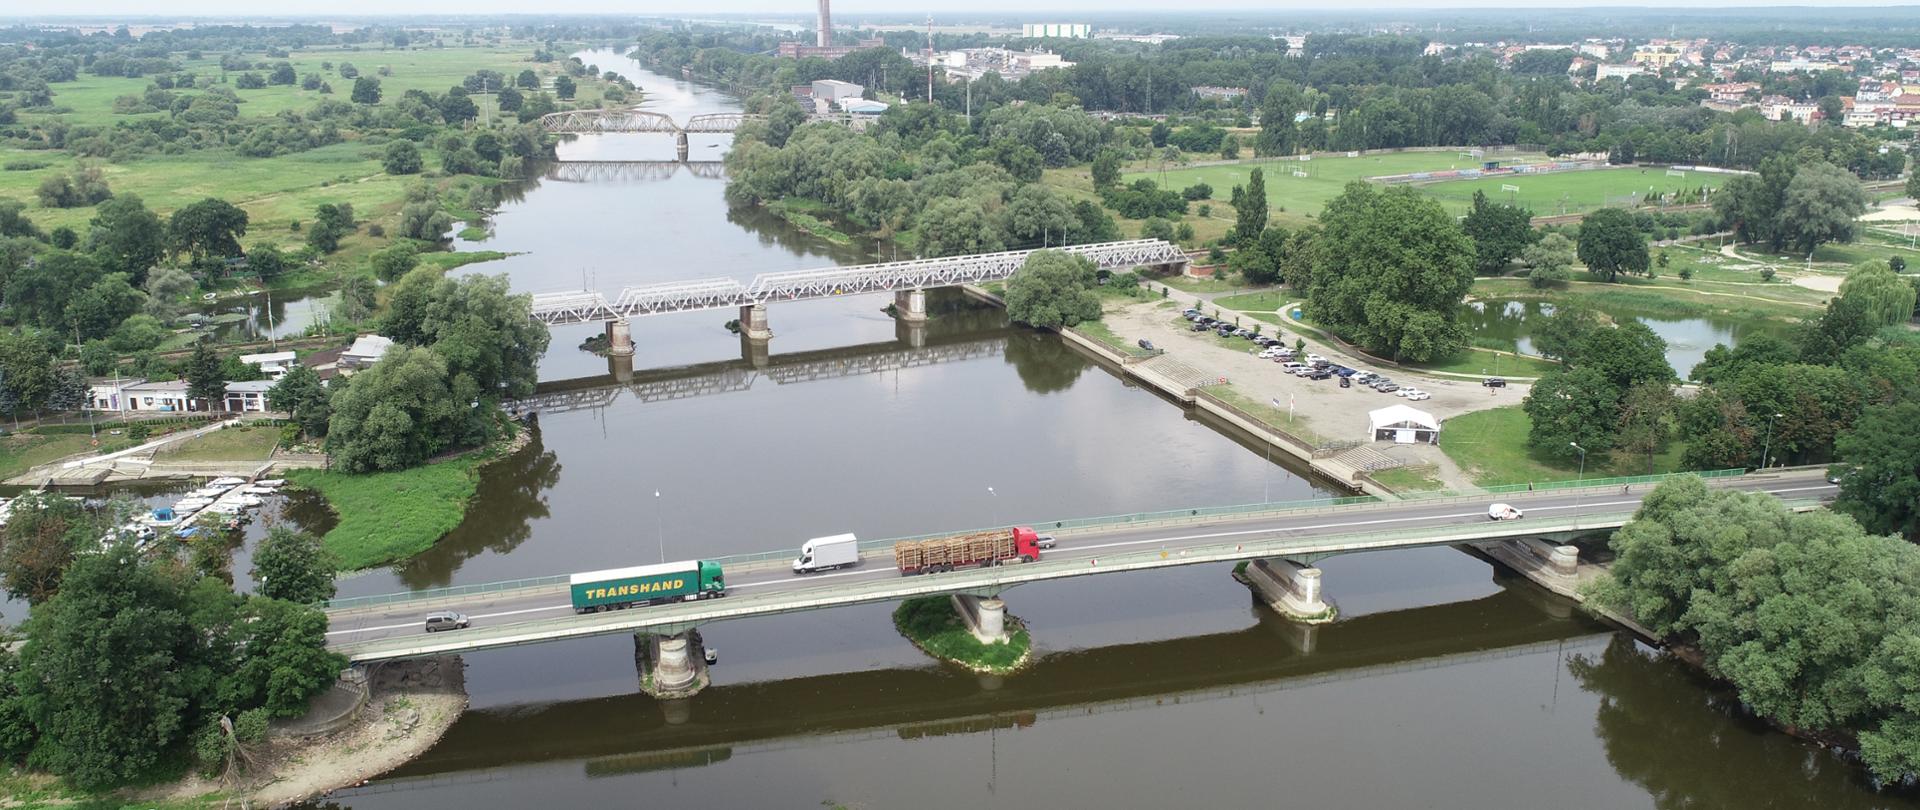 Zdjęcie z powietrza przedstawiające rzekę Wartę oraz rozpięte nad nią trzy mosty drogowe i kolejowe w otoczeniu nadrzecznej zieleni i zabudowy miejskiej.